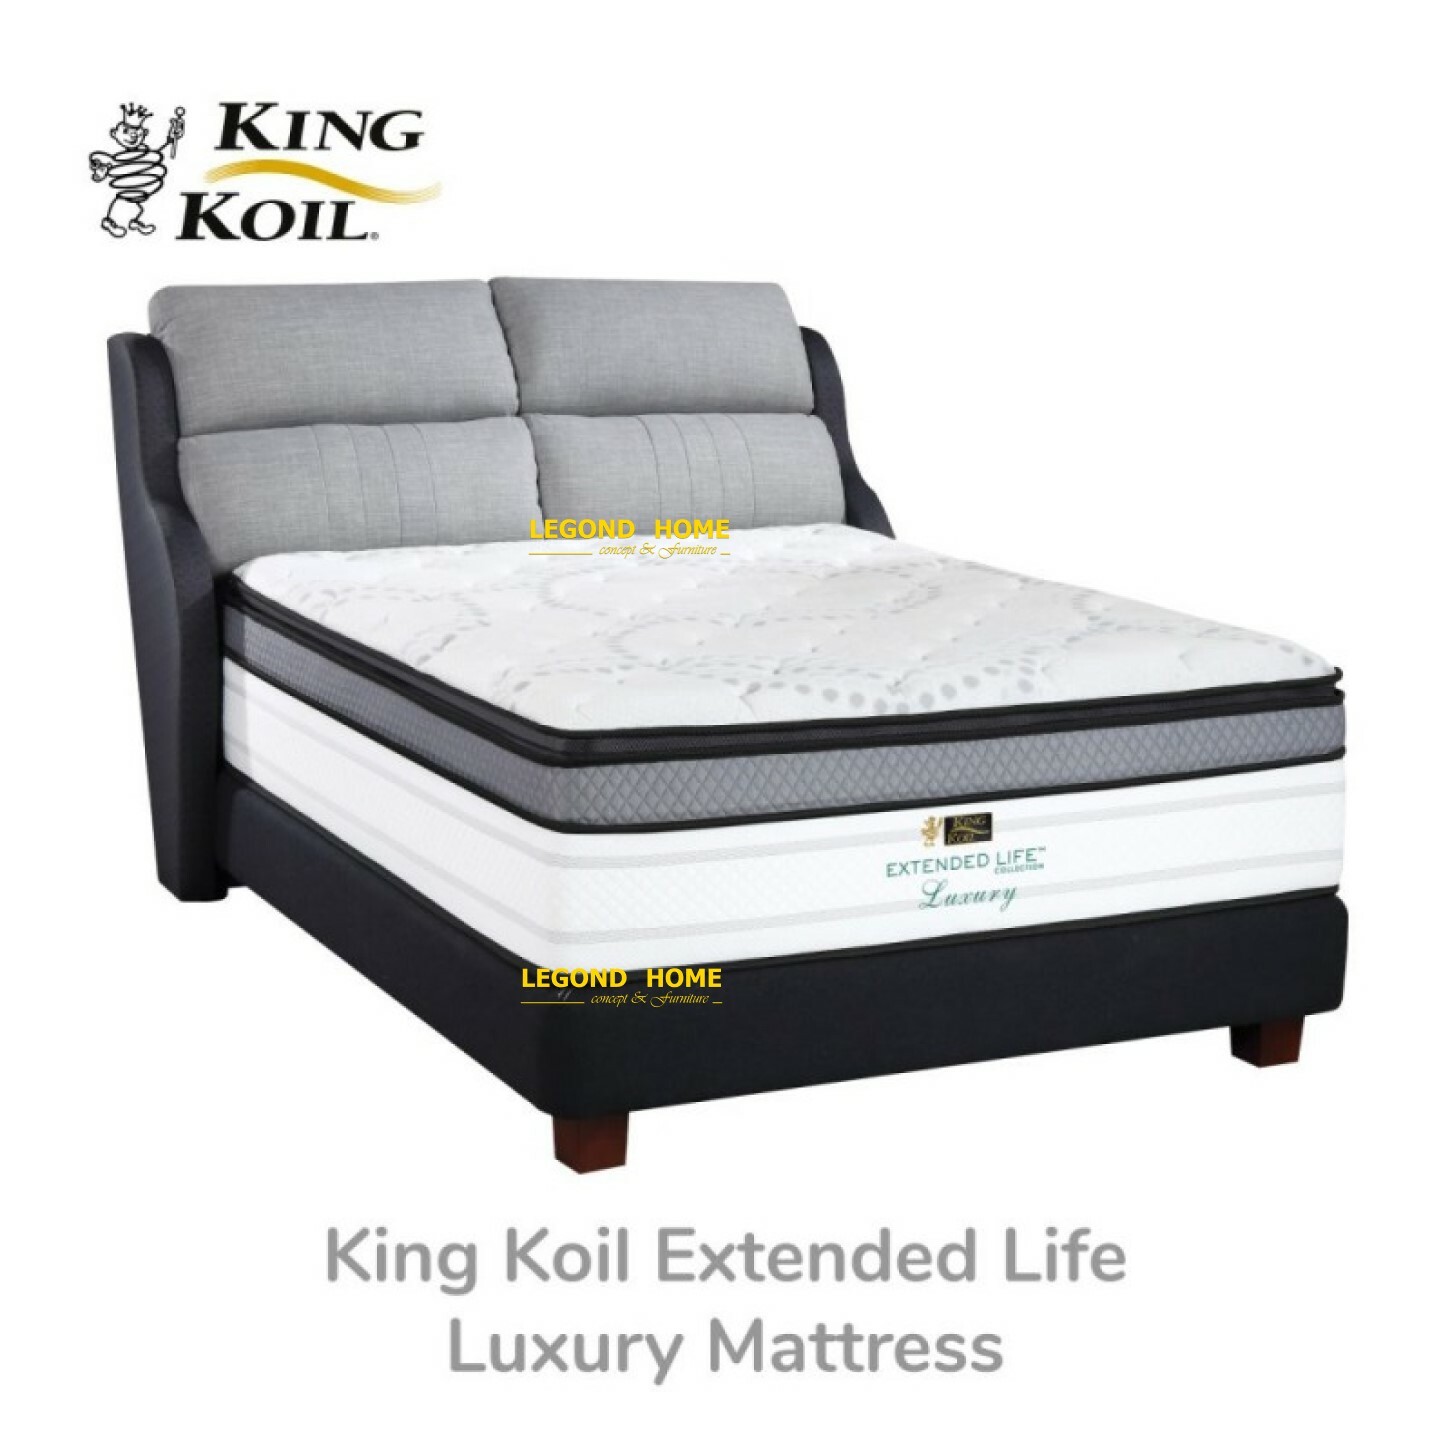 King-Koil-Extended-Life-Luxury-Mattress.jpg